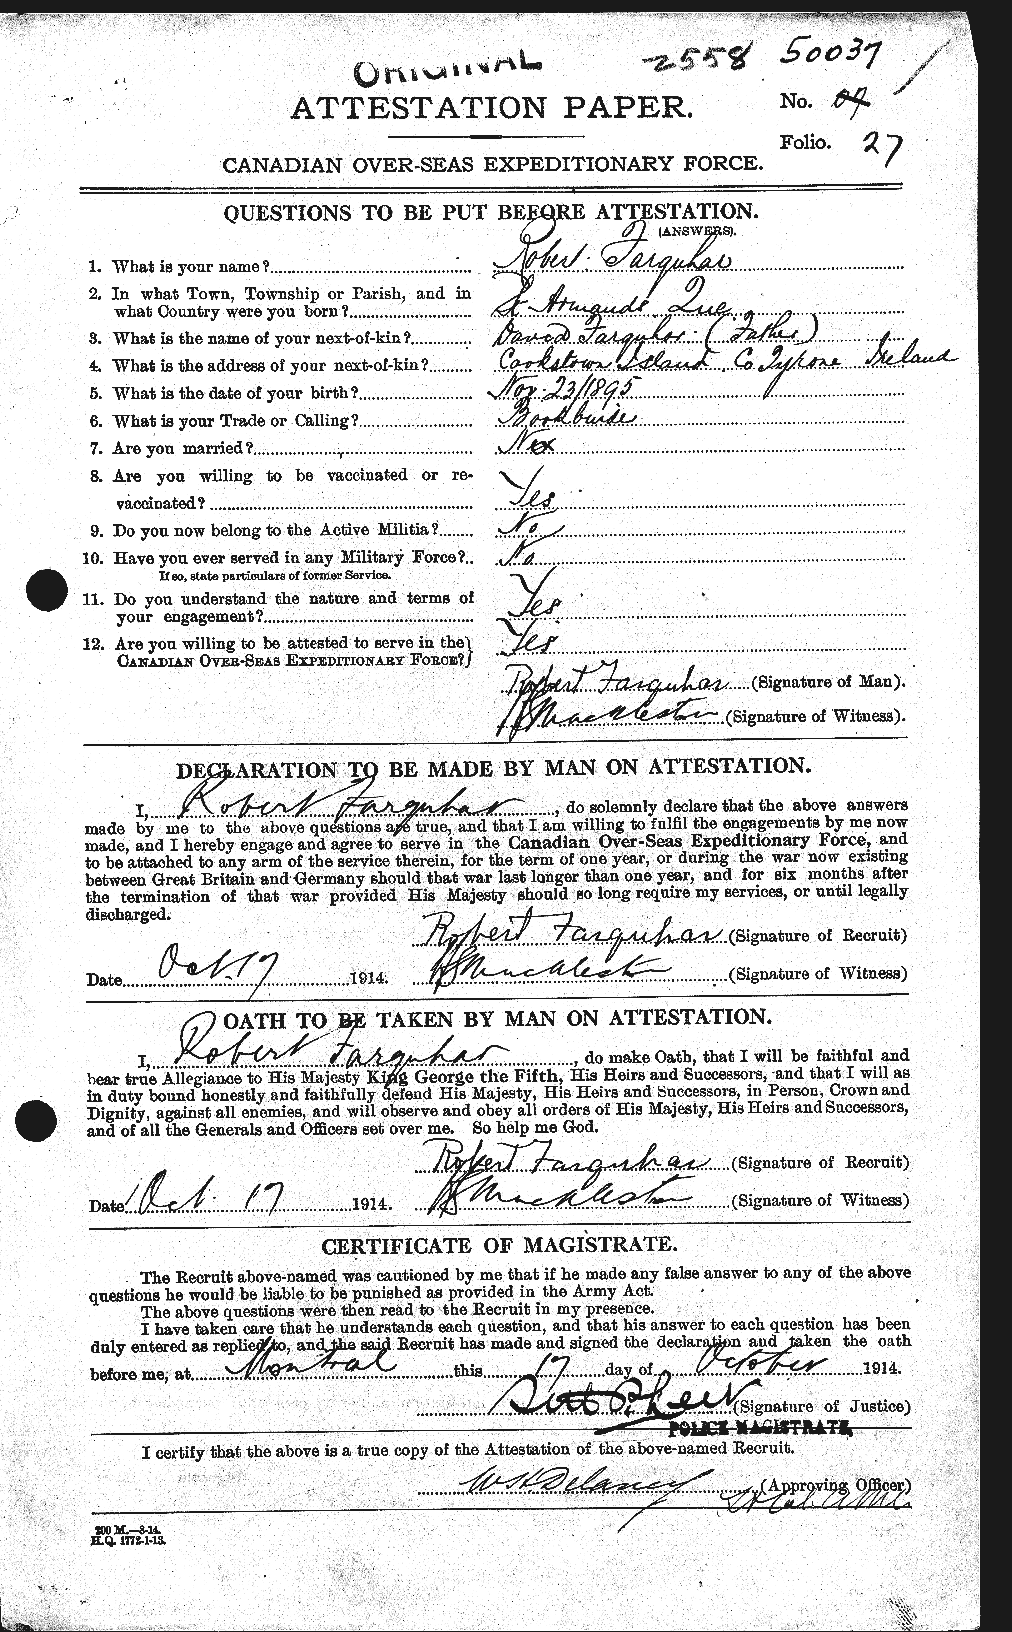 Dossiers du Personnel de la Première Guerre mondiale - CEC 318795a